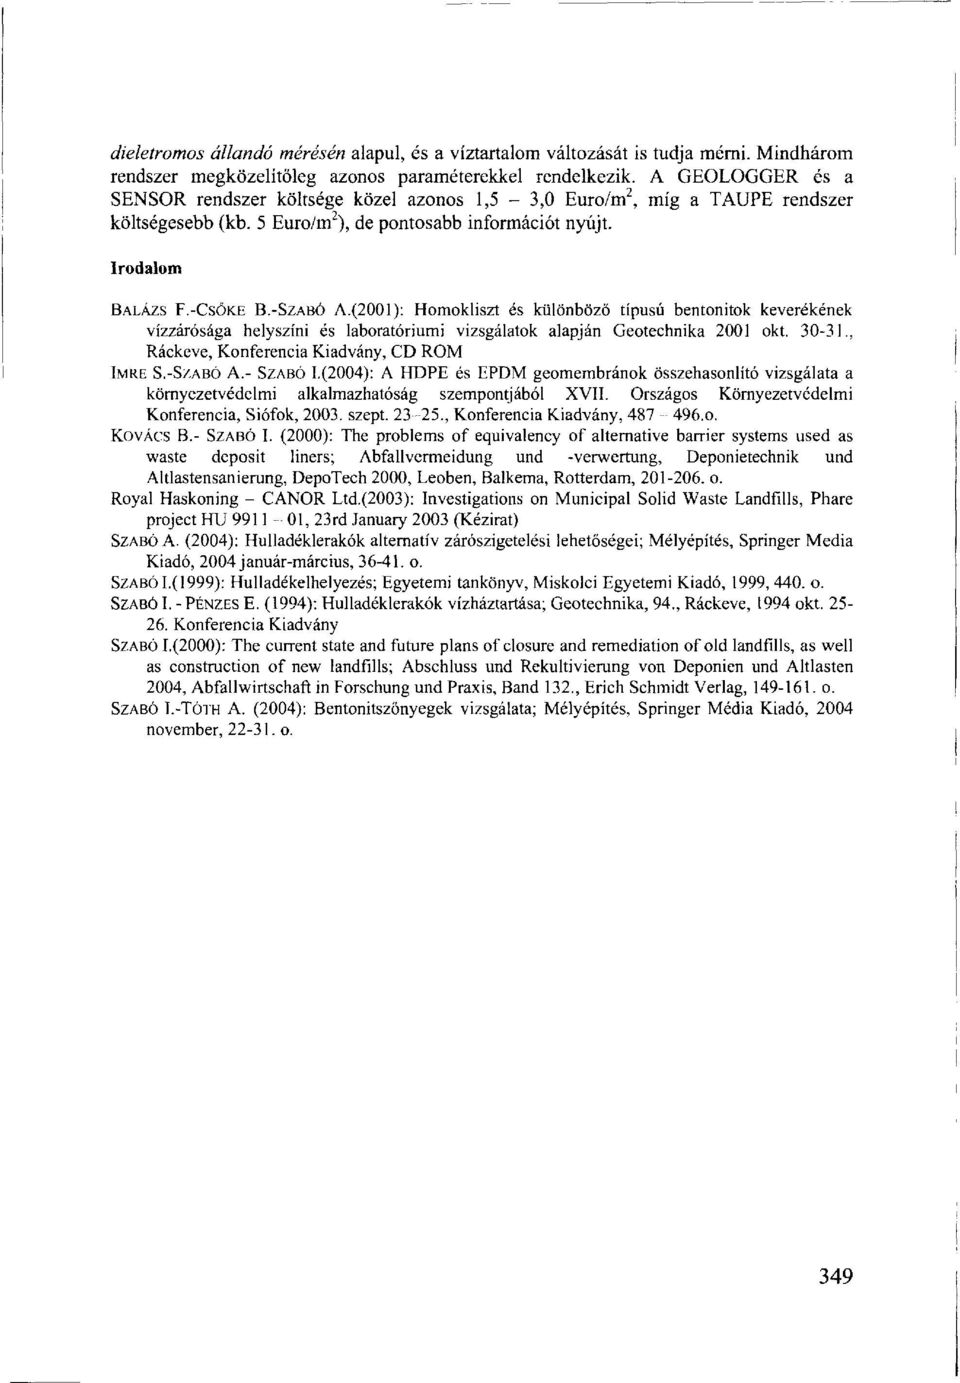 (2001): Homokliszt és különböző típusú bentonitok keverékének vízzárósága helyszíni és laboratóriumi vizsgálatok alapján Geotechnika 2001 okt. 30-31., Ráckeve, Konferencia Kiadvány, CD ROM IMRE S.